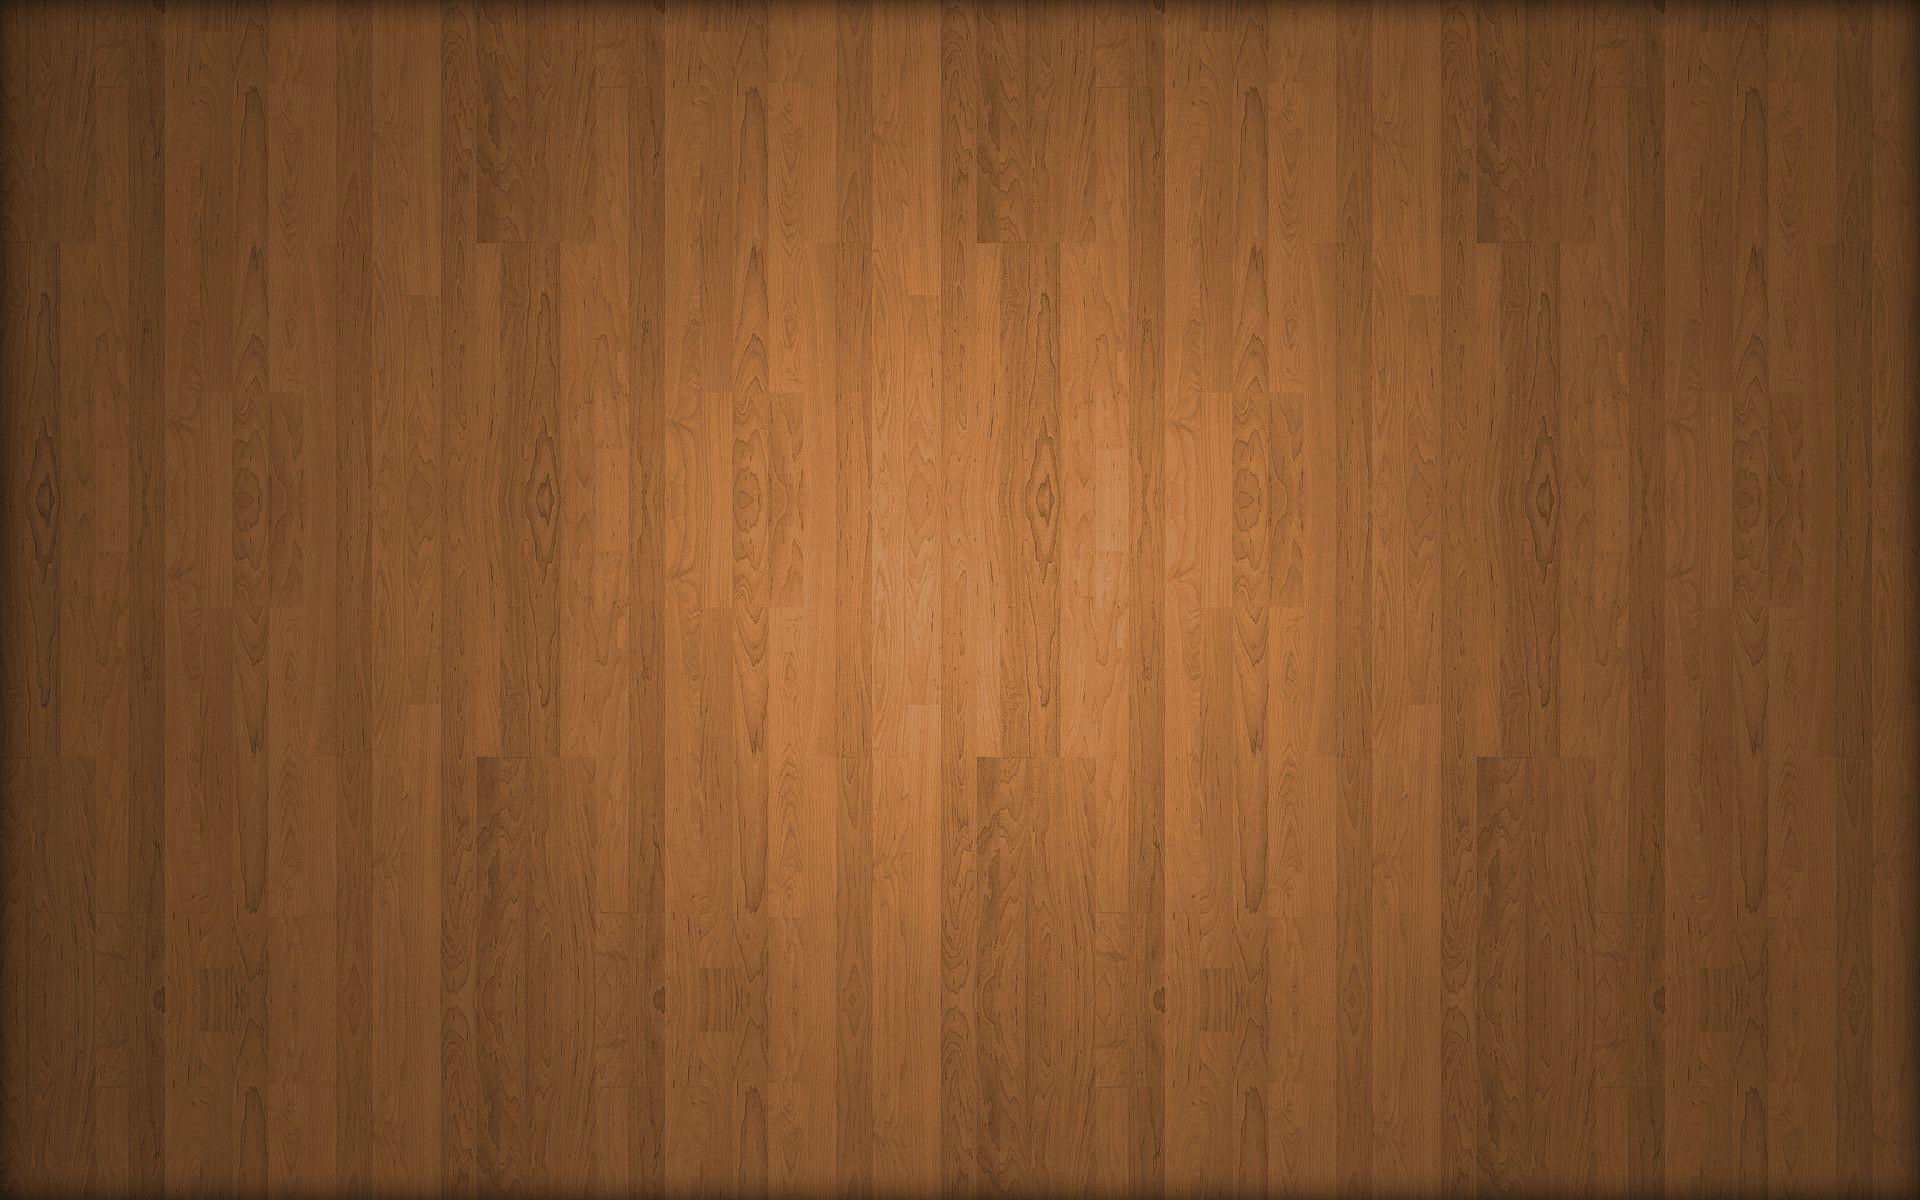 Wood Background Wallpaper HD 1080p Wallpaper. awshdwallpaper